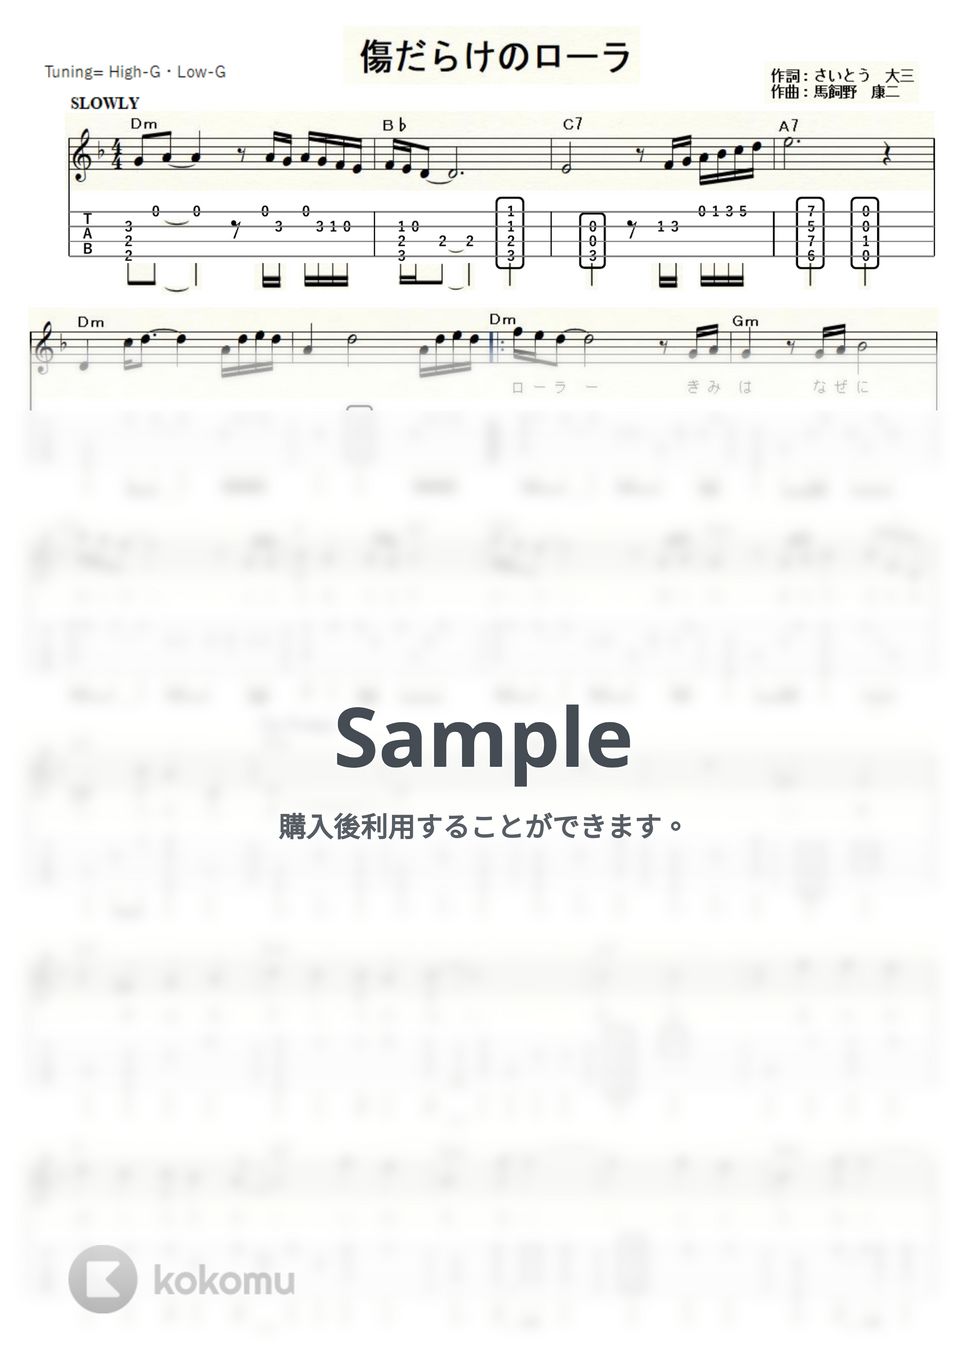 西城秀樹 - 傷だらけのローラ (ｳｸﾚﾚｿﾛ/High-G・Low-G/中級) by ukulelepapa